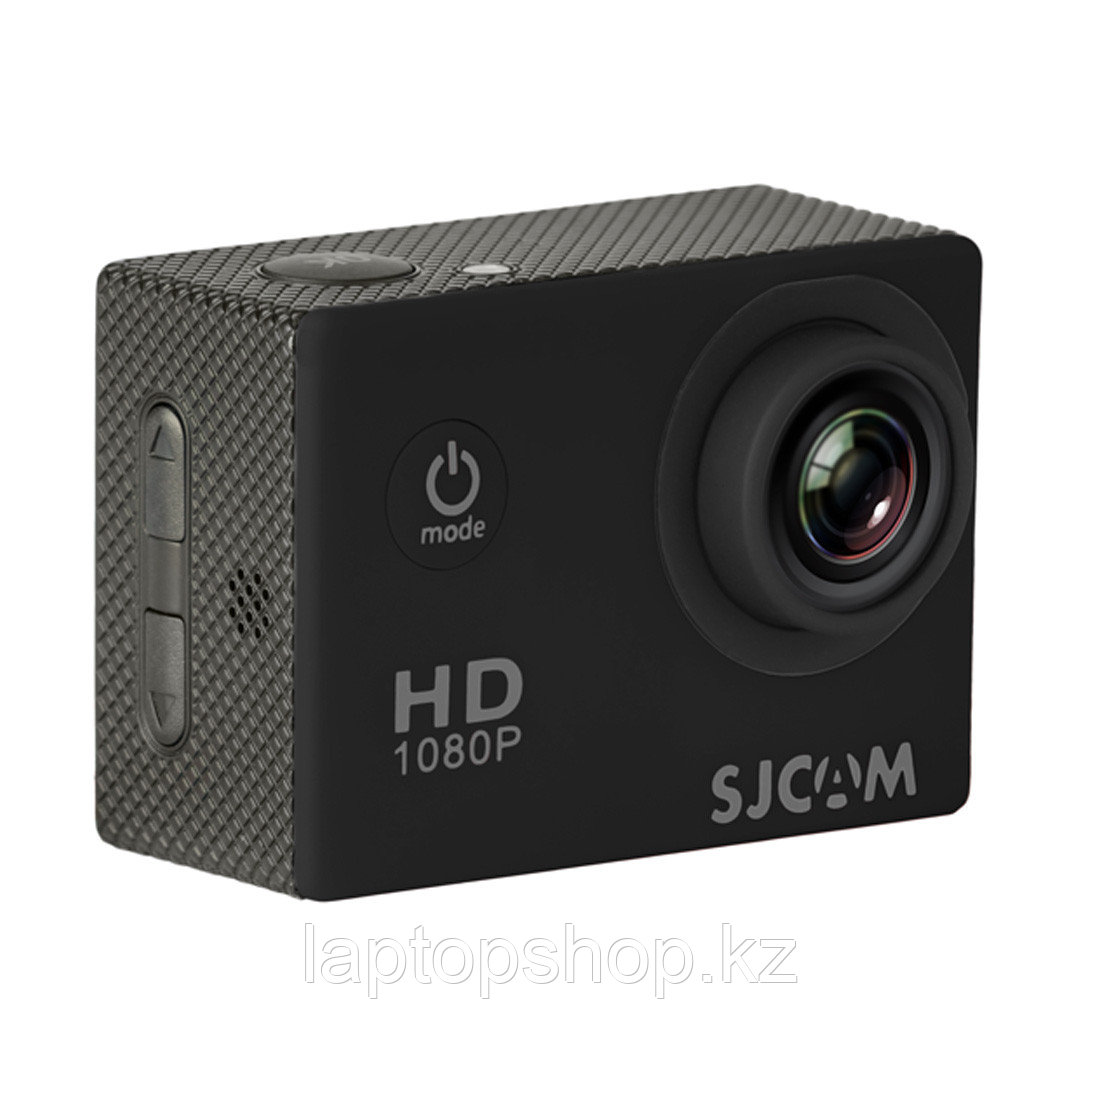 Экшн-камера SJCAM SJ4000, фото 1